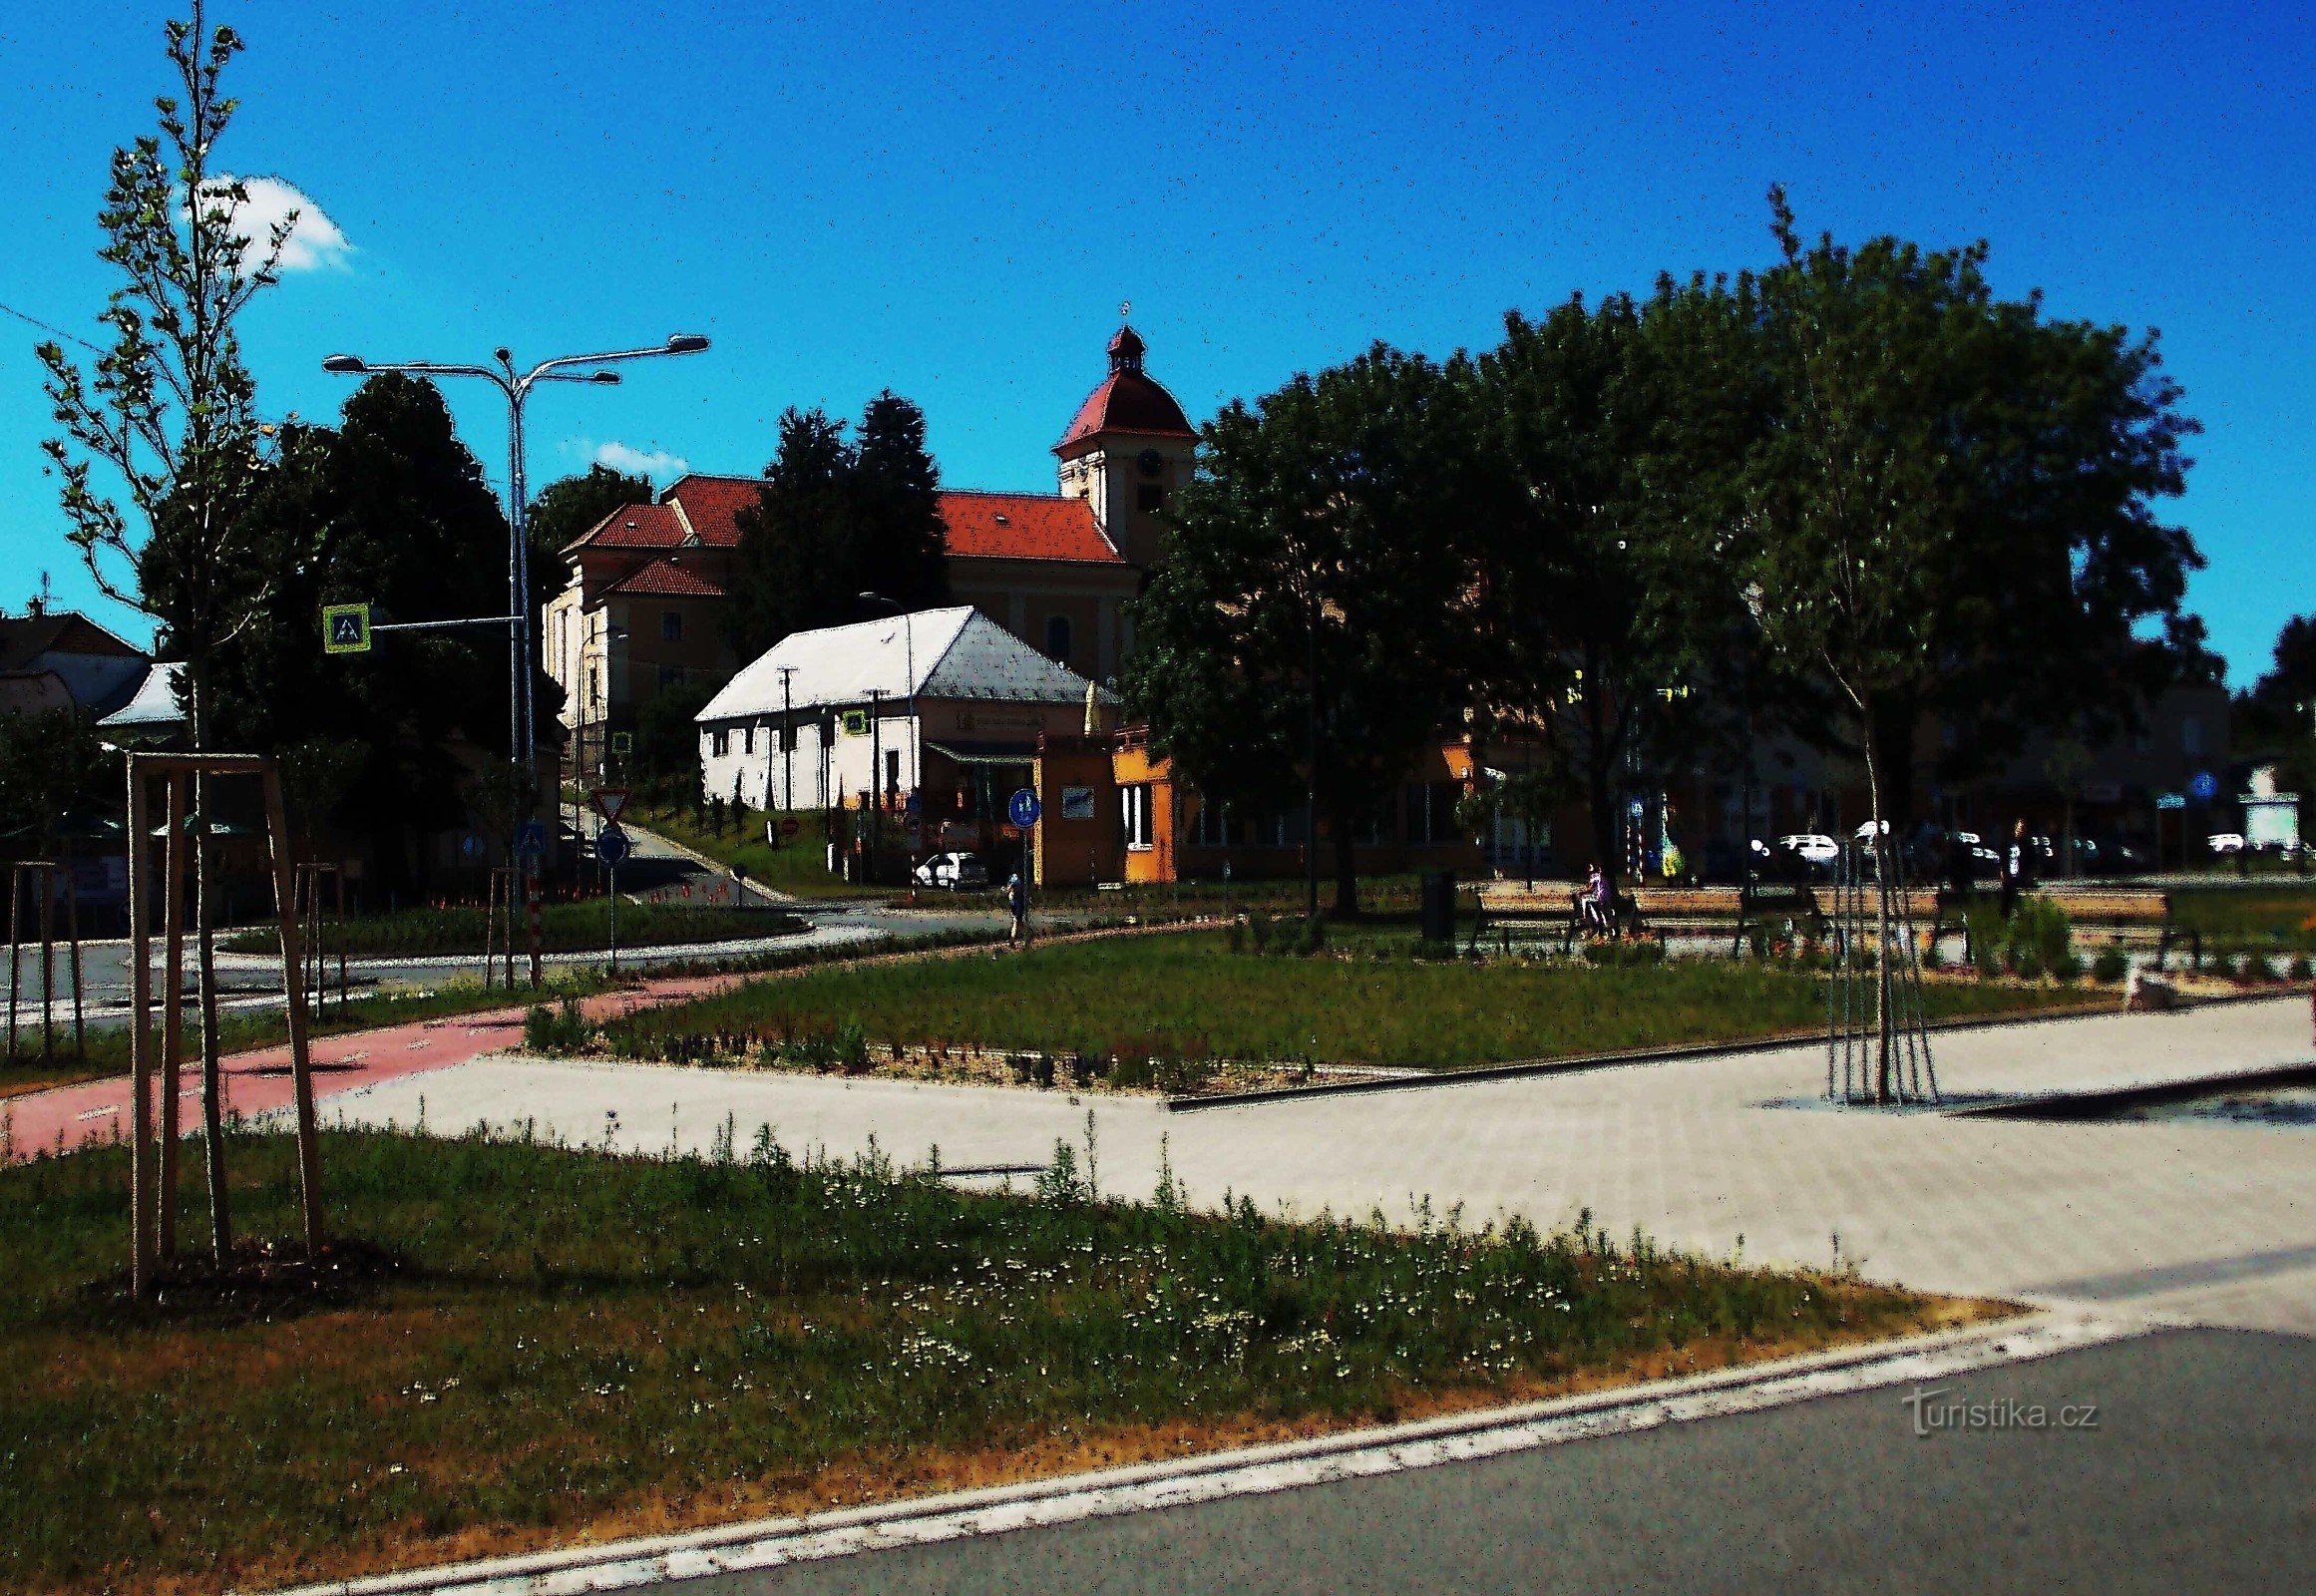 ズリーン近くのマレノヴィツェに復元された広場